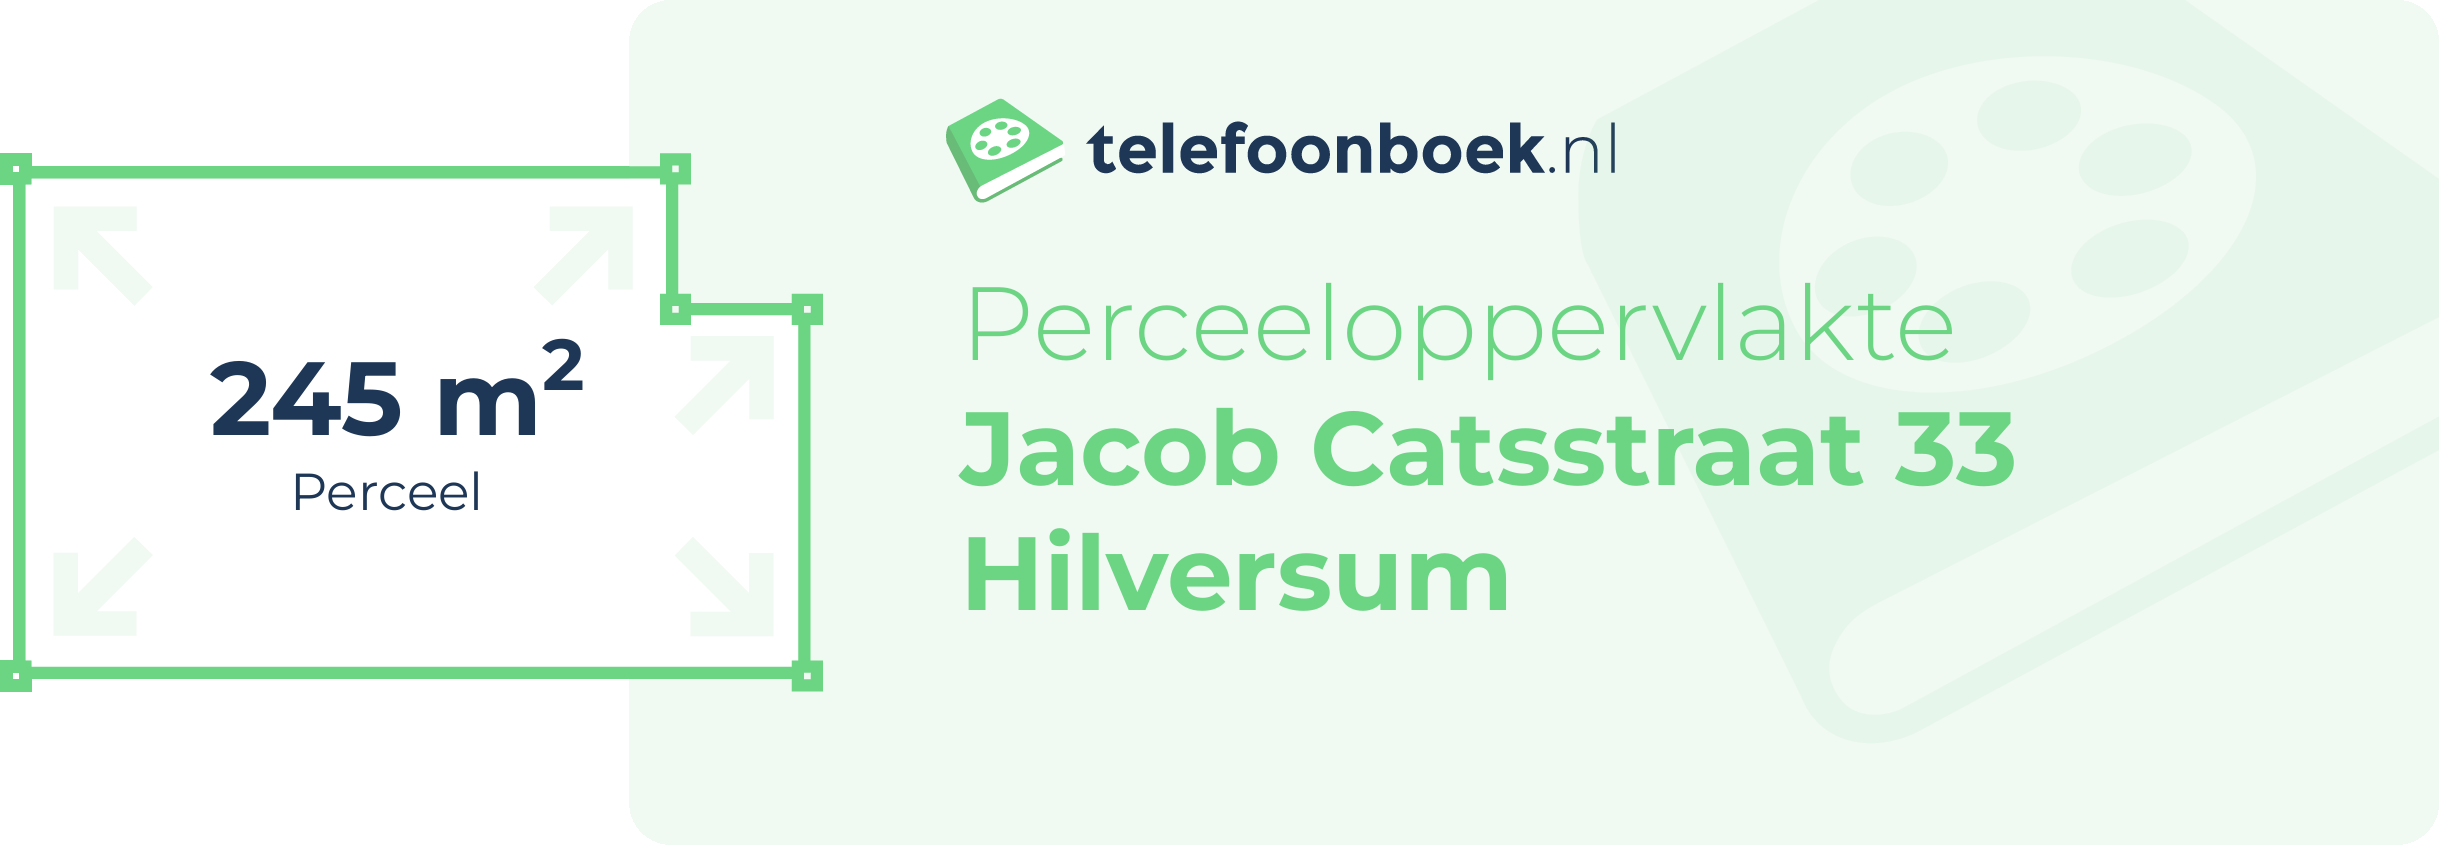 Perceeloppervlakte Jacob Catsstraat 33 Hilversum